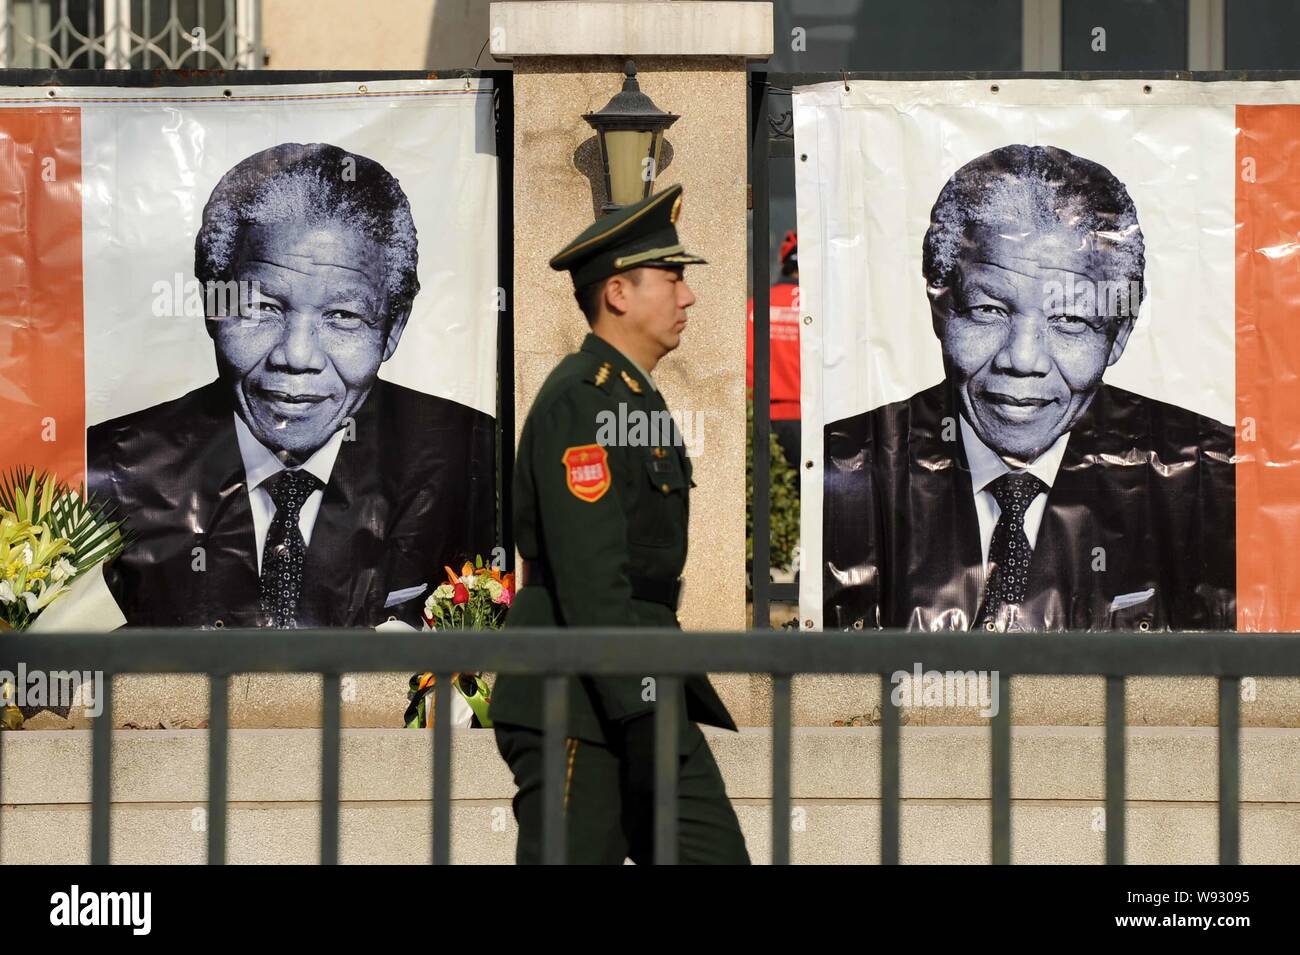 Einem chinesischen paramilitärischen Polizisten Spaziergänge Vergangenheit Fotos der ehemalige südafrikanische Präsident Nelson Mandela bei der südafrikanischen Botschaft in Ch angezeigt werden Stockfoto